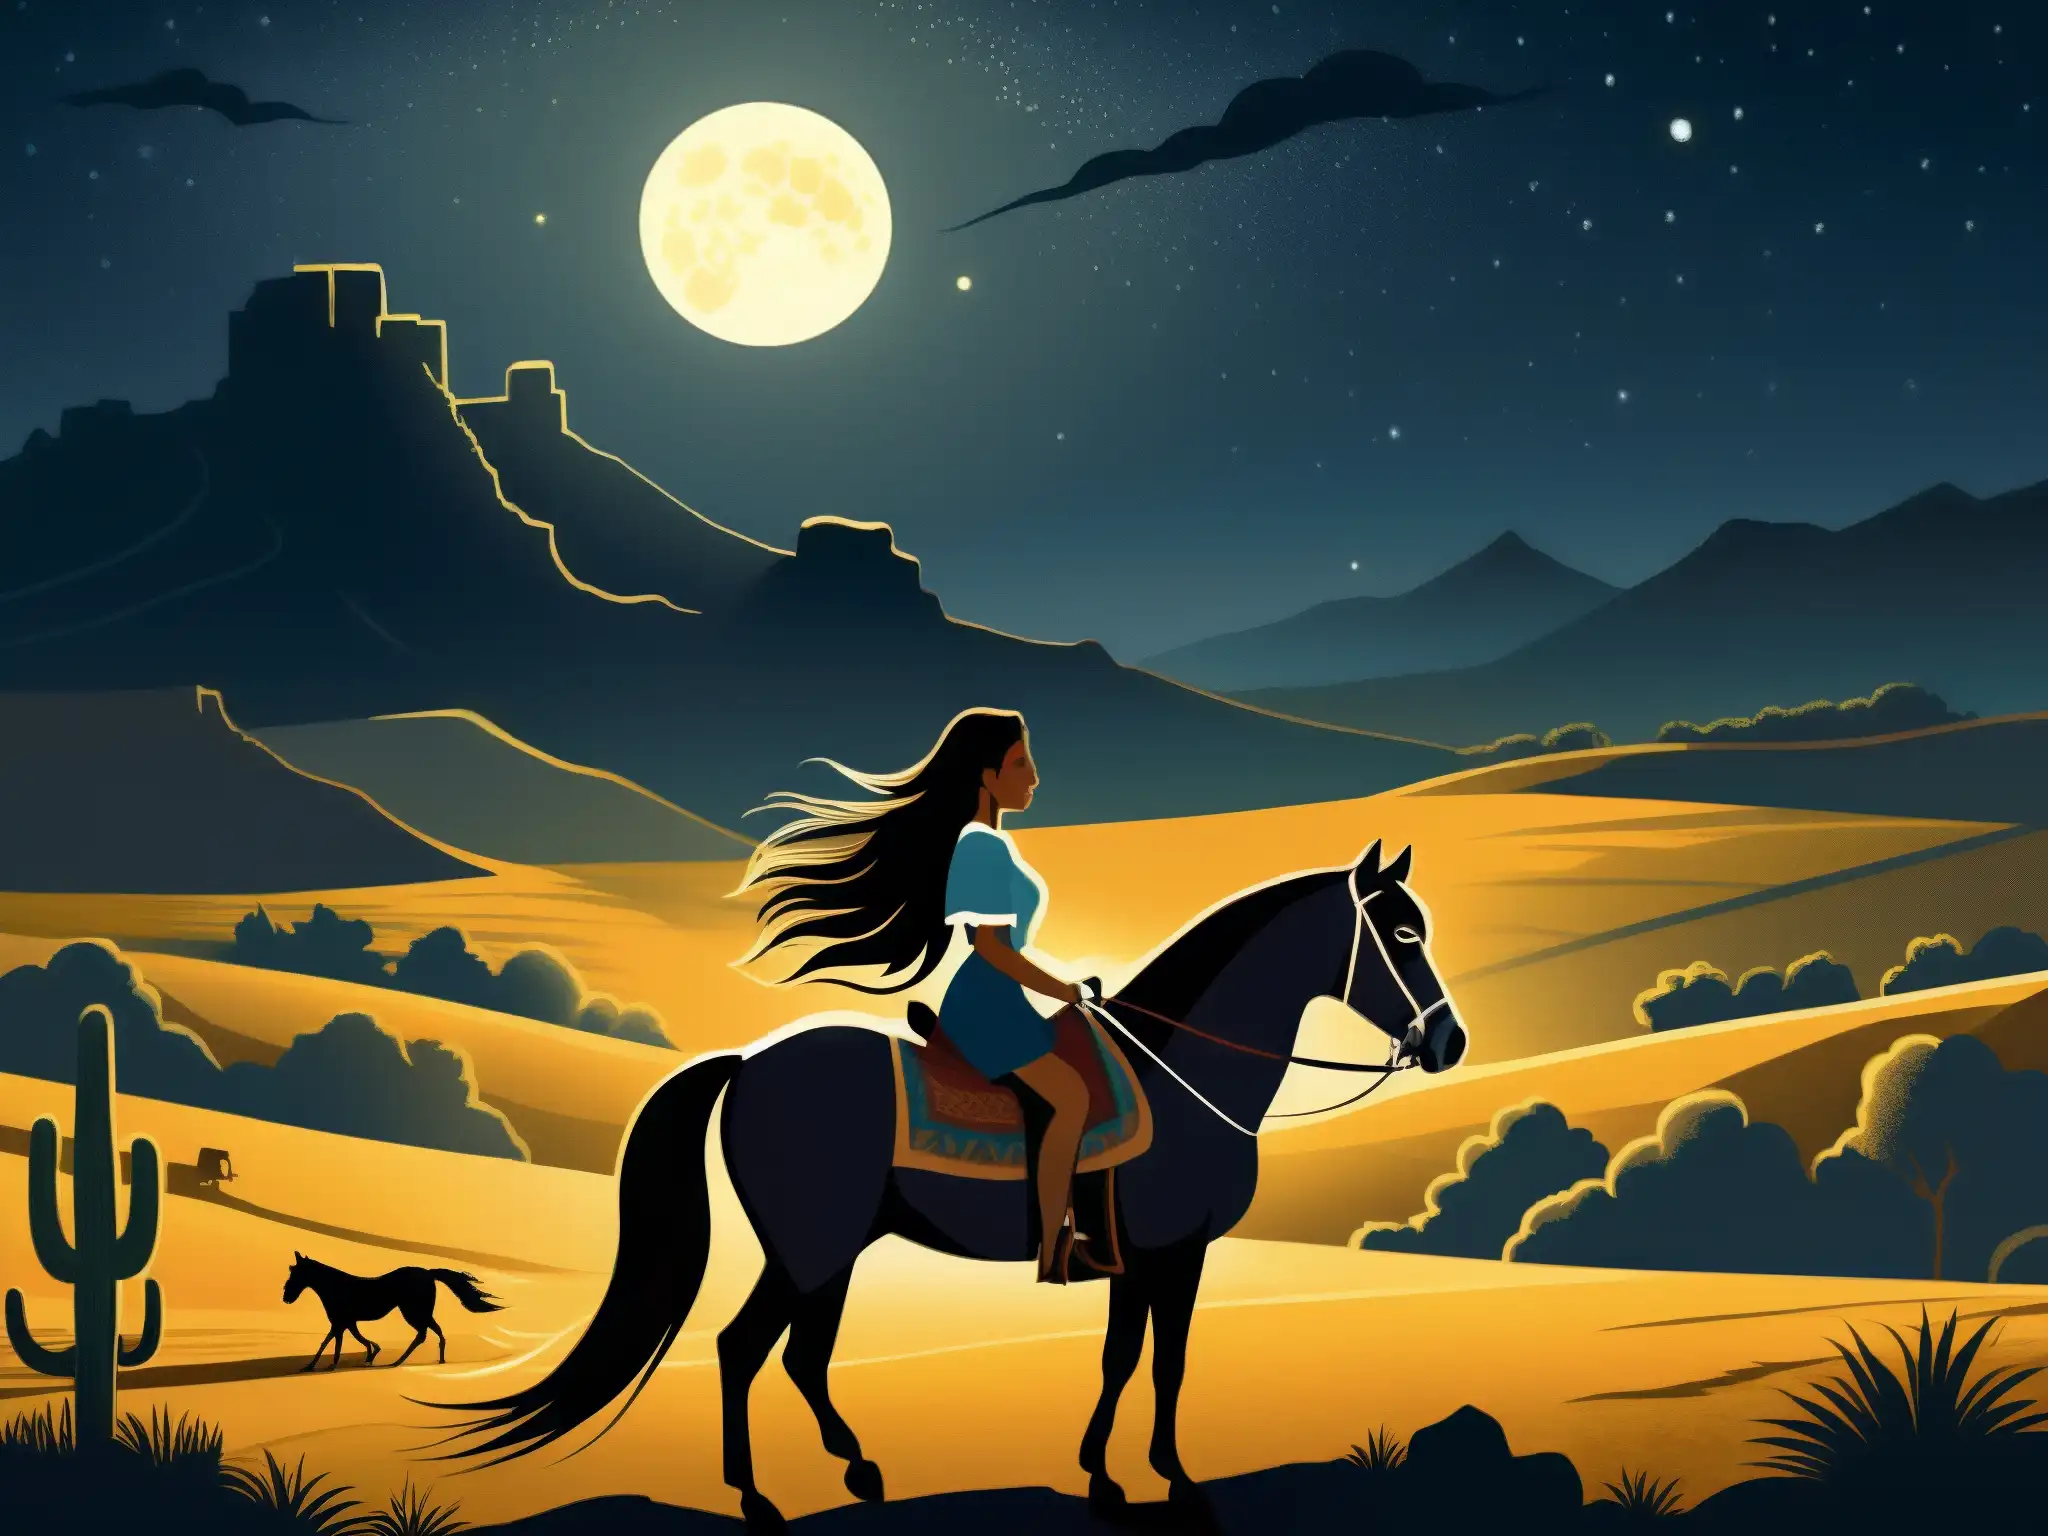 Una ilustración detallada de un paisaje mexicano iluminado por la luna, con la figura sombría de La Cegua emergiendo de la oscuridad